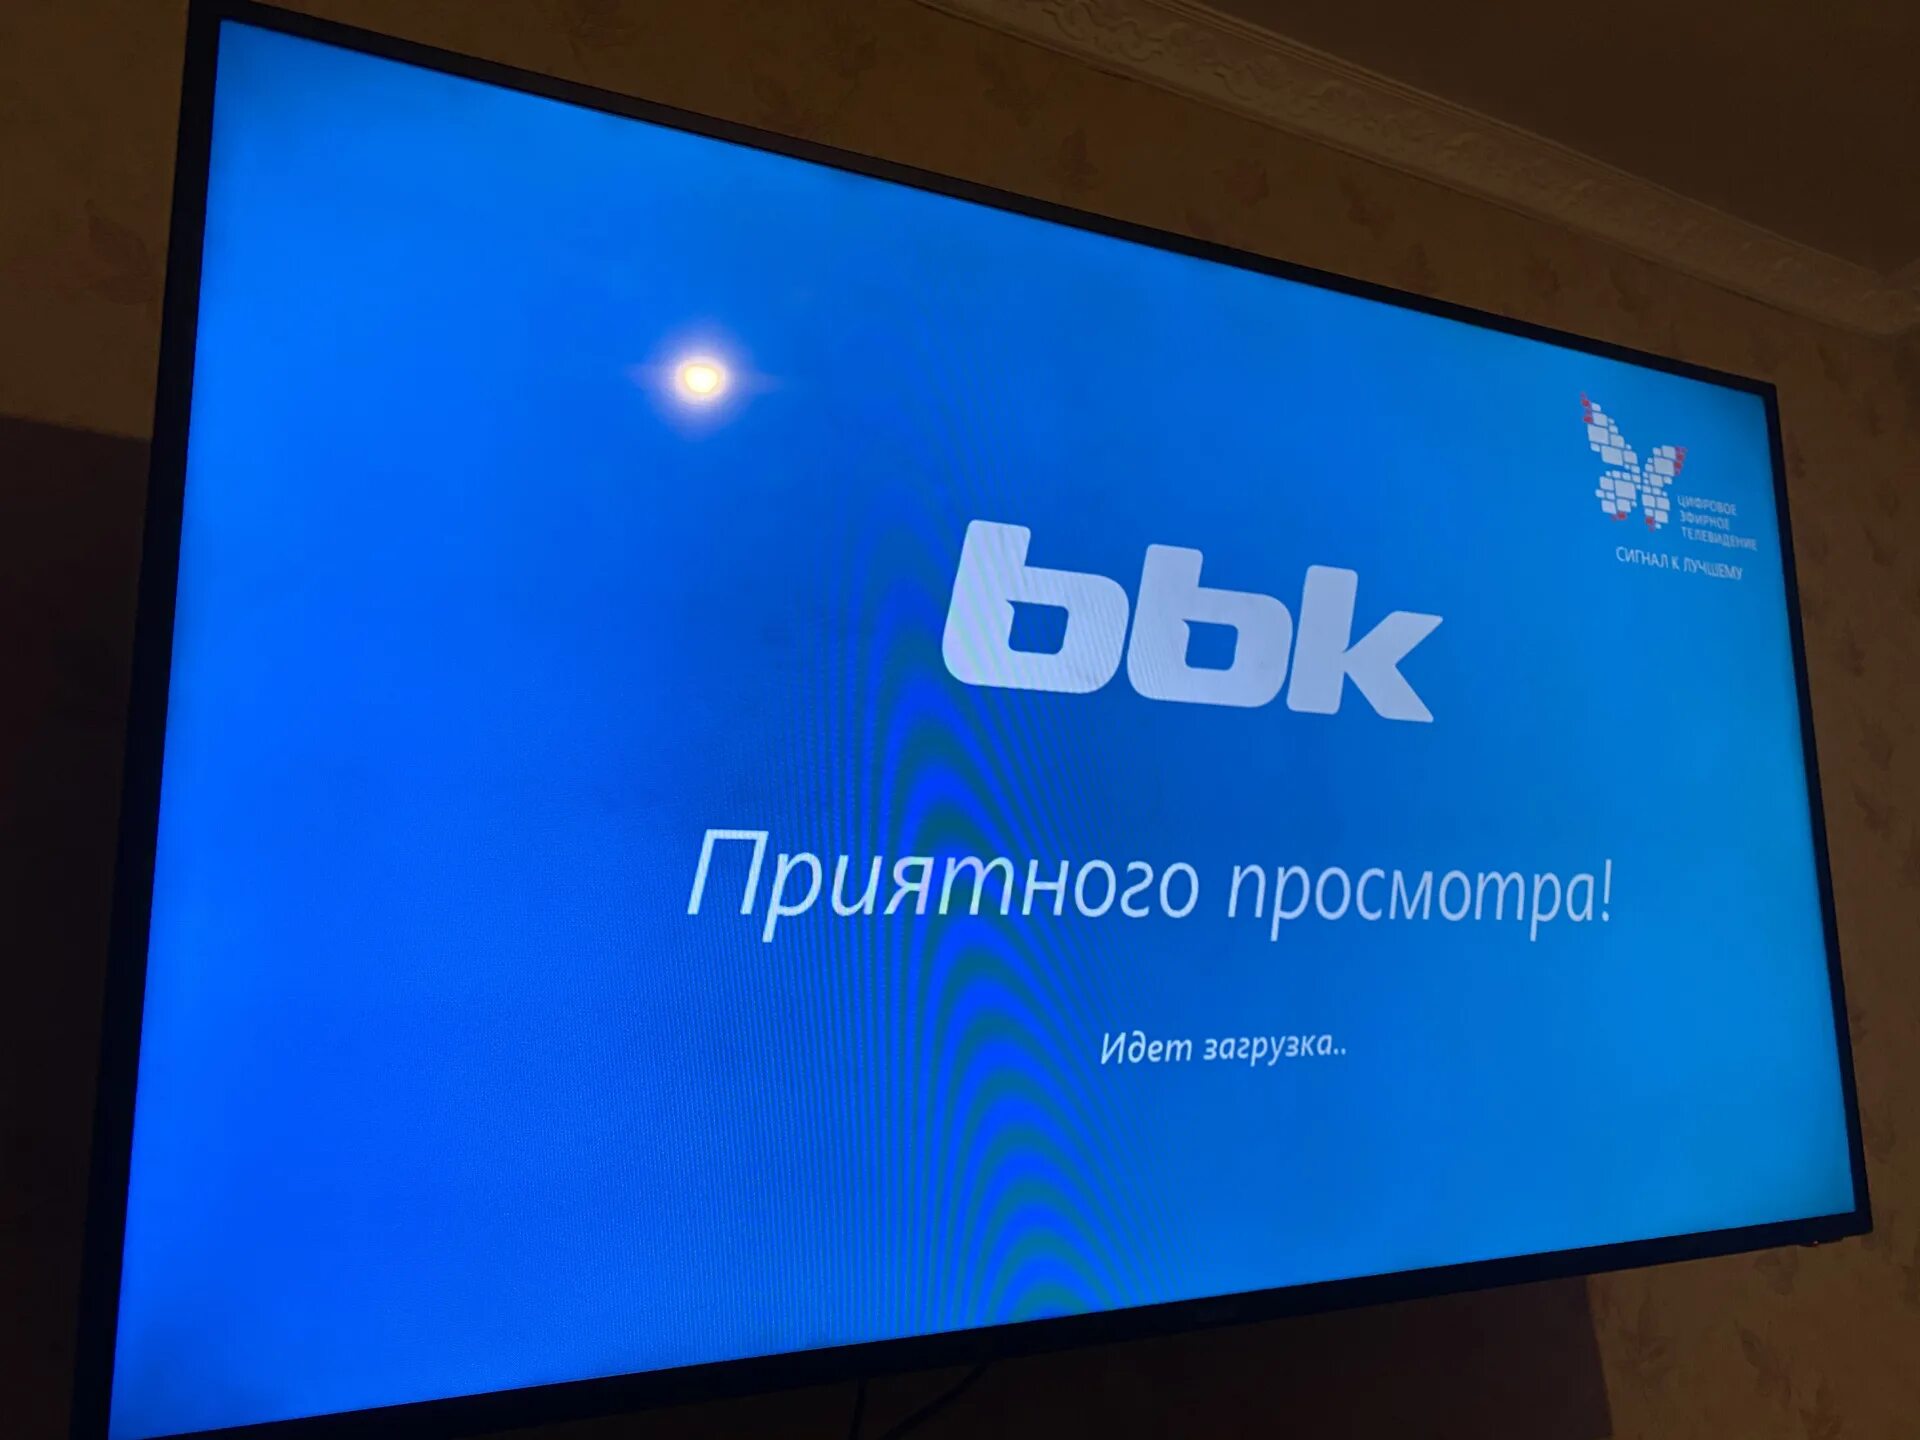 BBK 55lex. BBK телевизор Прошивка. 55lex 5039. Прошивка на телевизор BBK андроид.